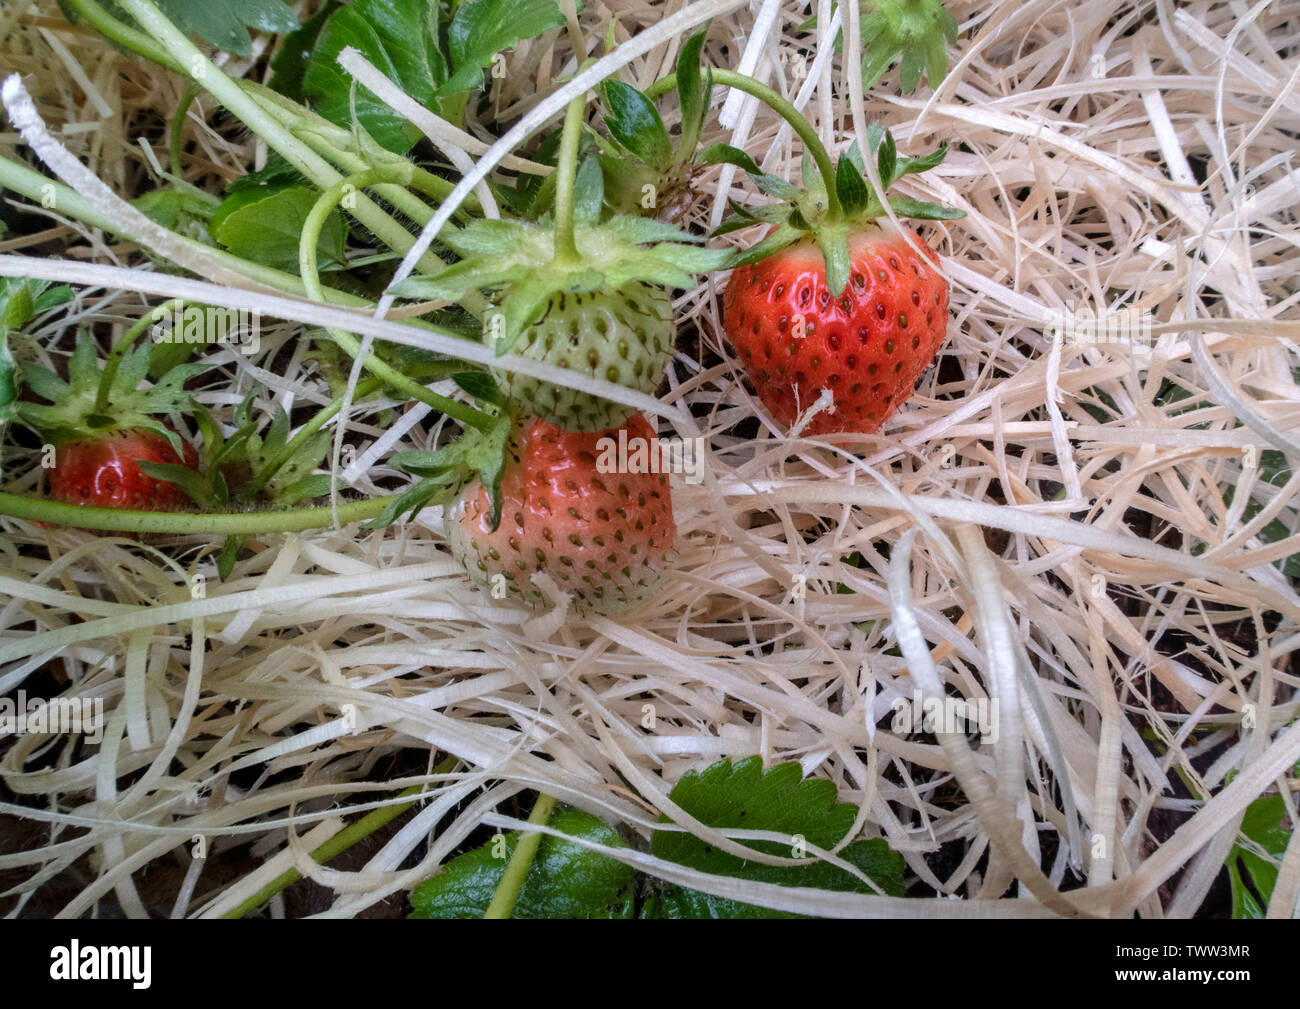 Erdbeere 'Cambridge' wächst auf einem Bett aus Stroh. Erdbeeren auf Stroh. Stockfoto